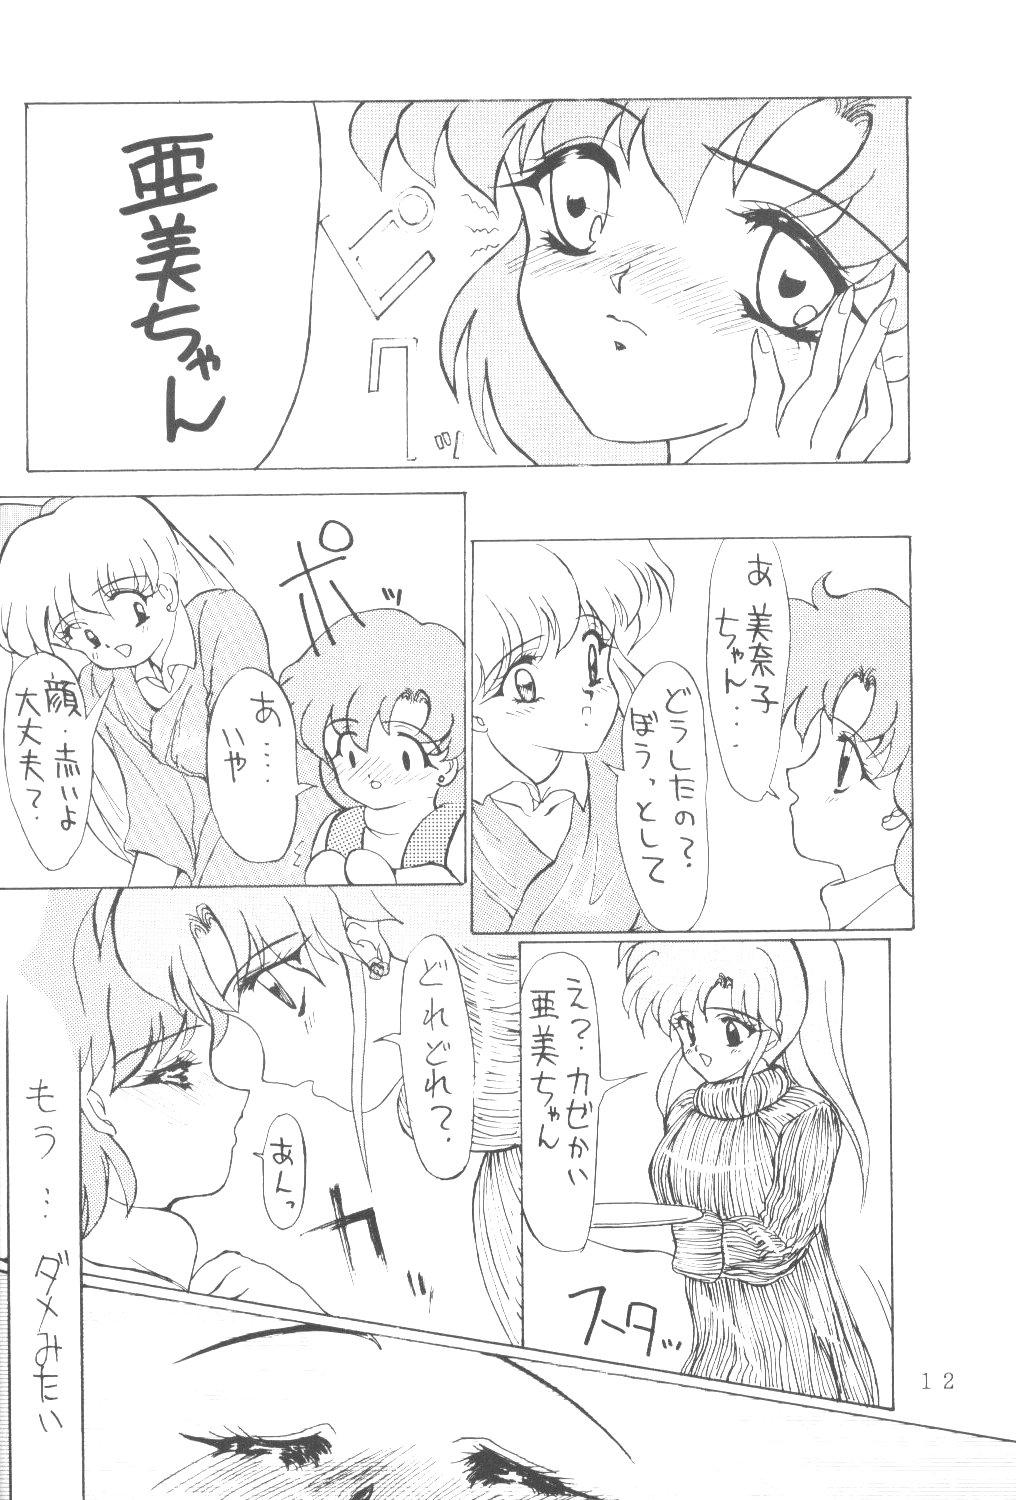 Nurumassage ALIVE AMI LOST - Sailor moon Ejaculation - Page 11